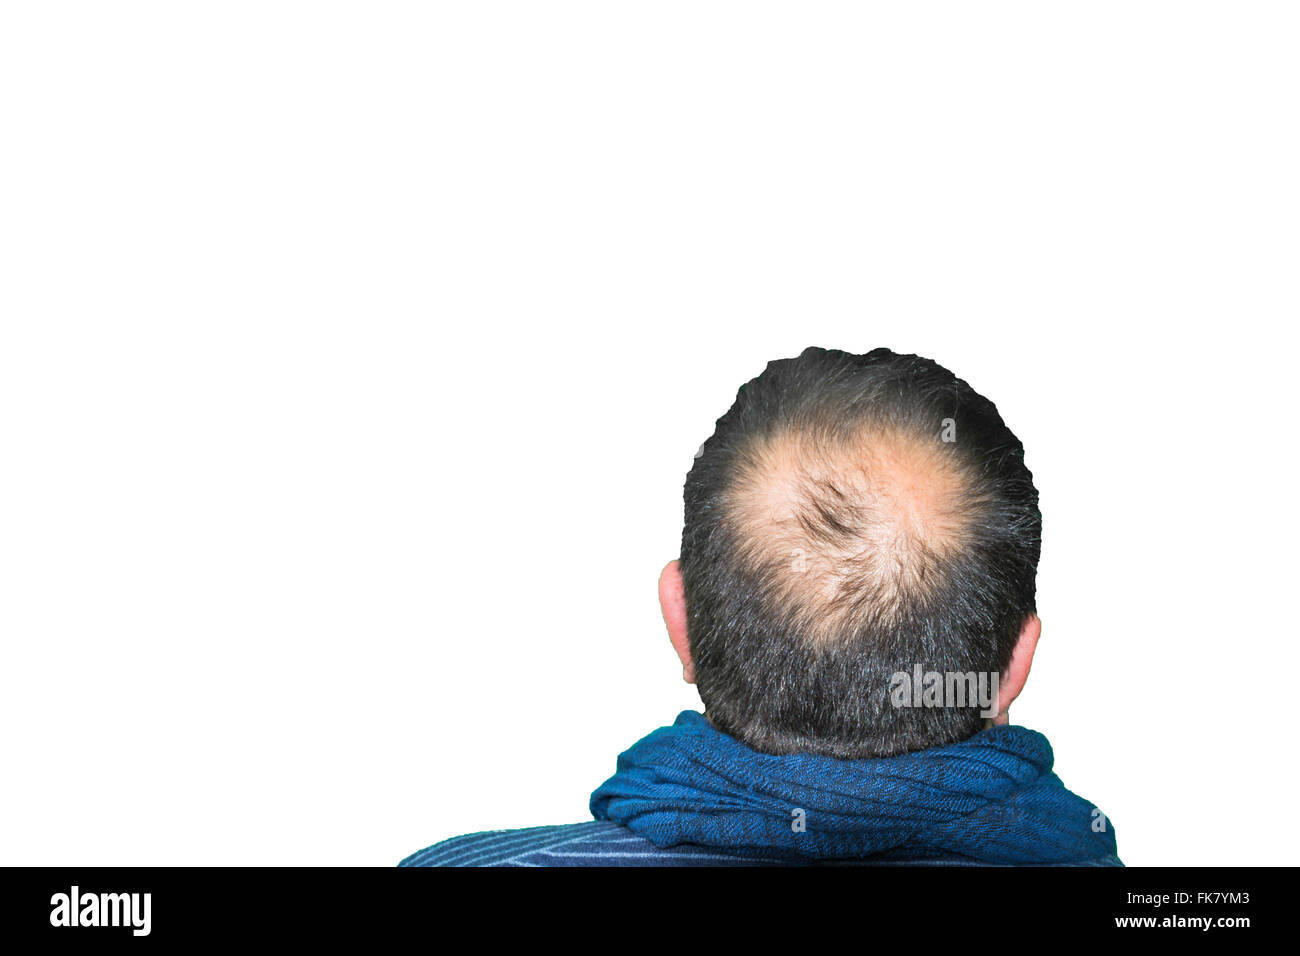 Reife Yang Mann, gesehen von hinten in den Kopf, Haare zu verlieren beginnt, beginnt er zu alt zu sein. Stockfoto